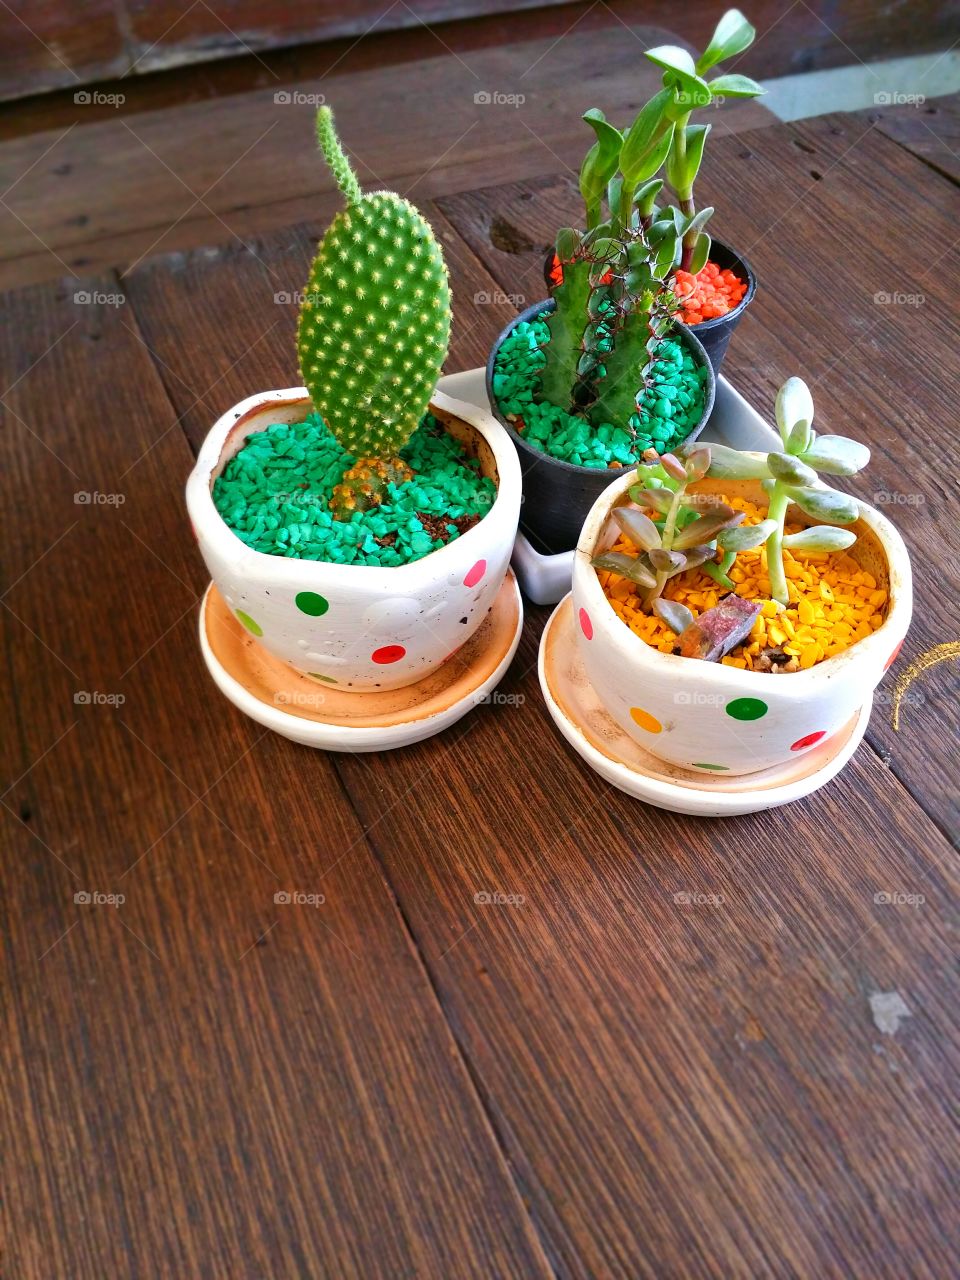 Cactus plant growing in ceramic pot